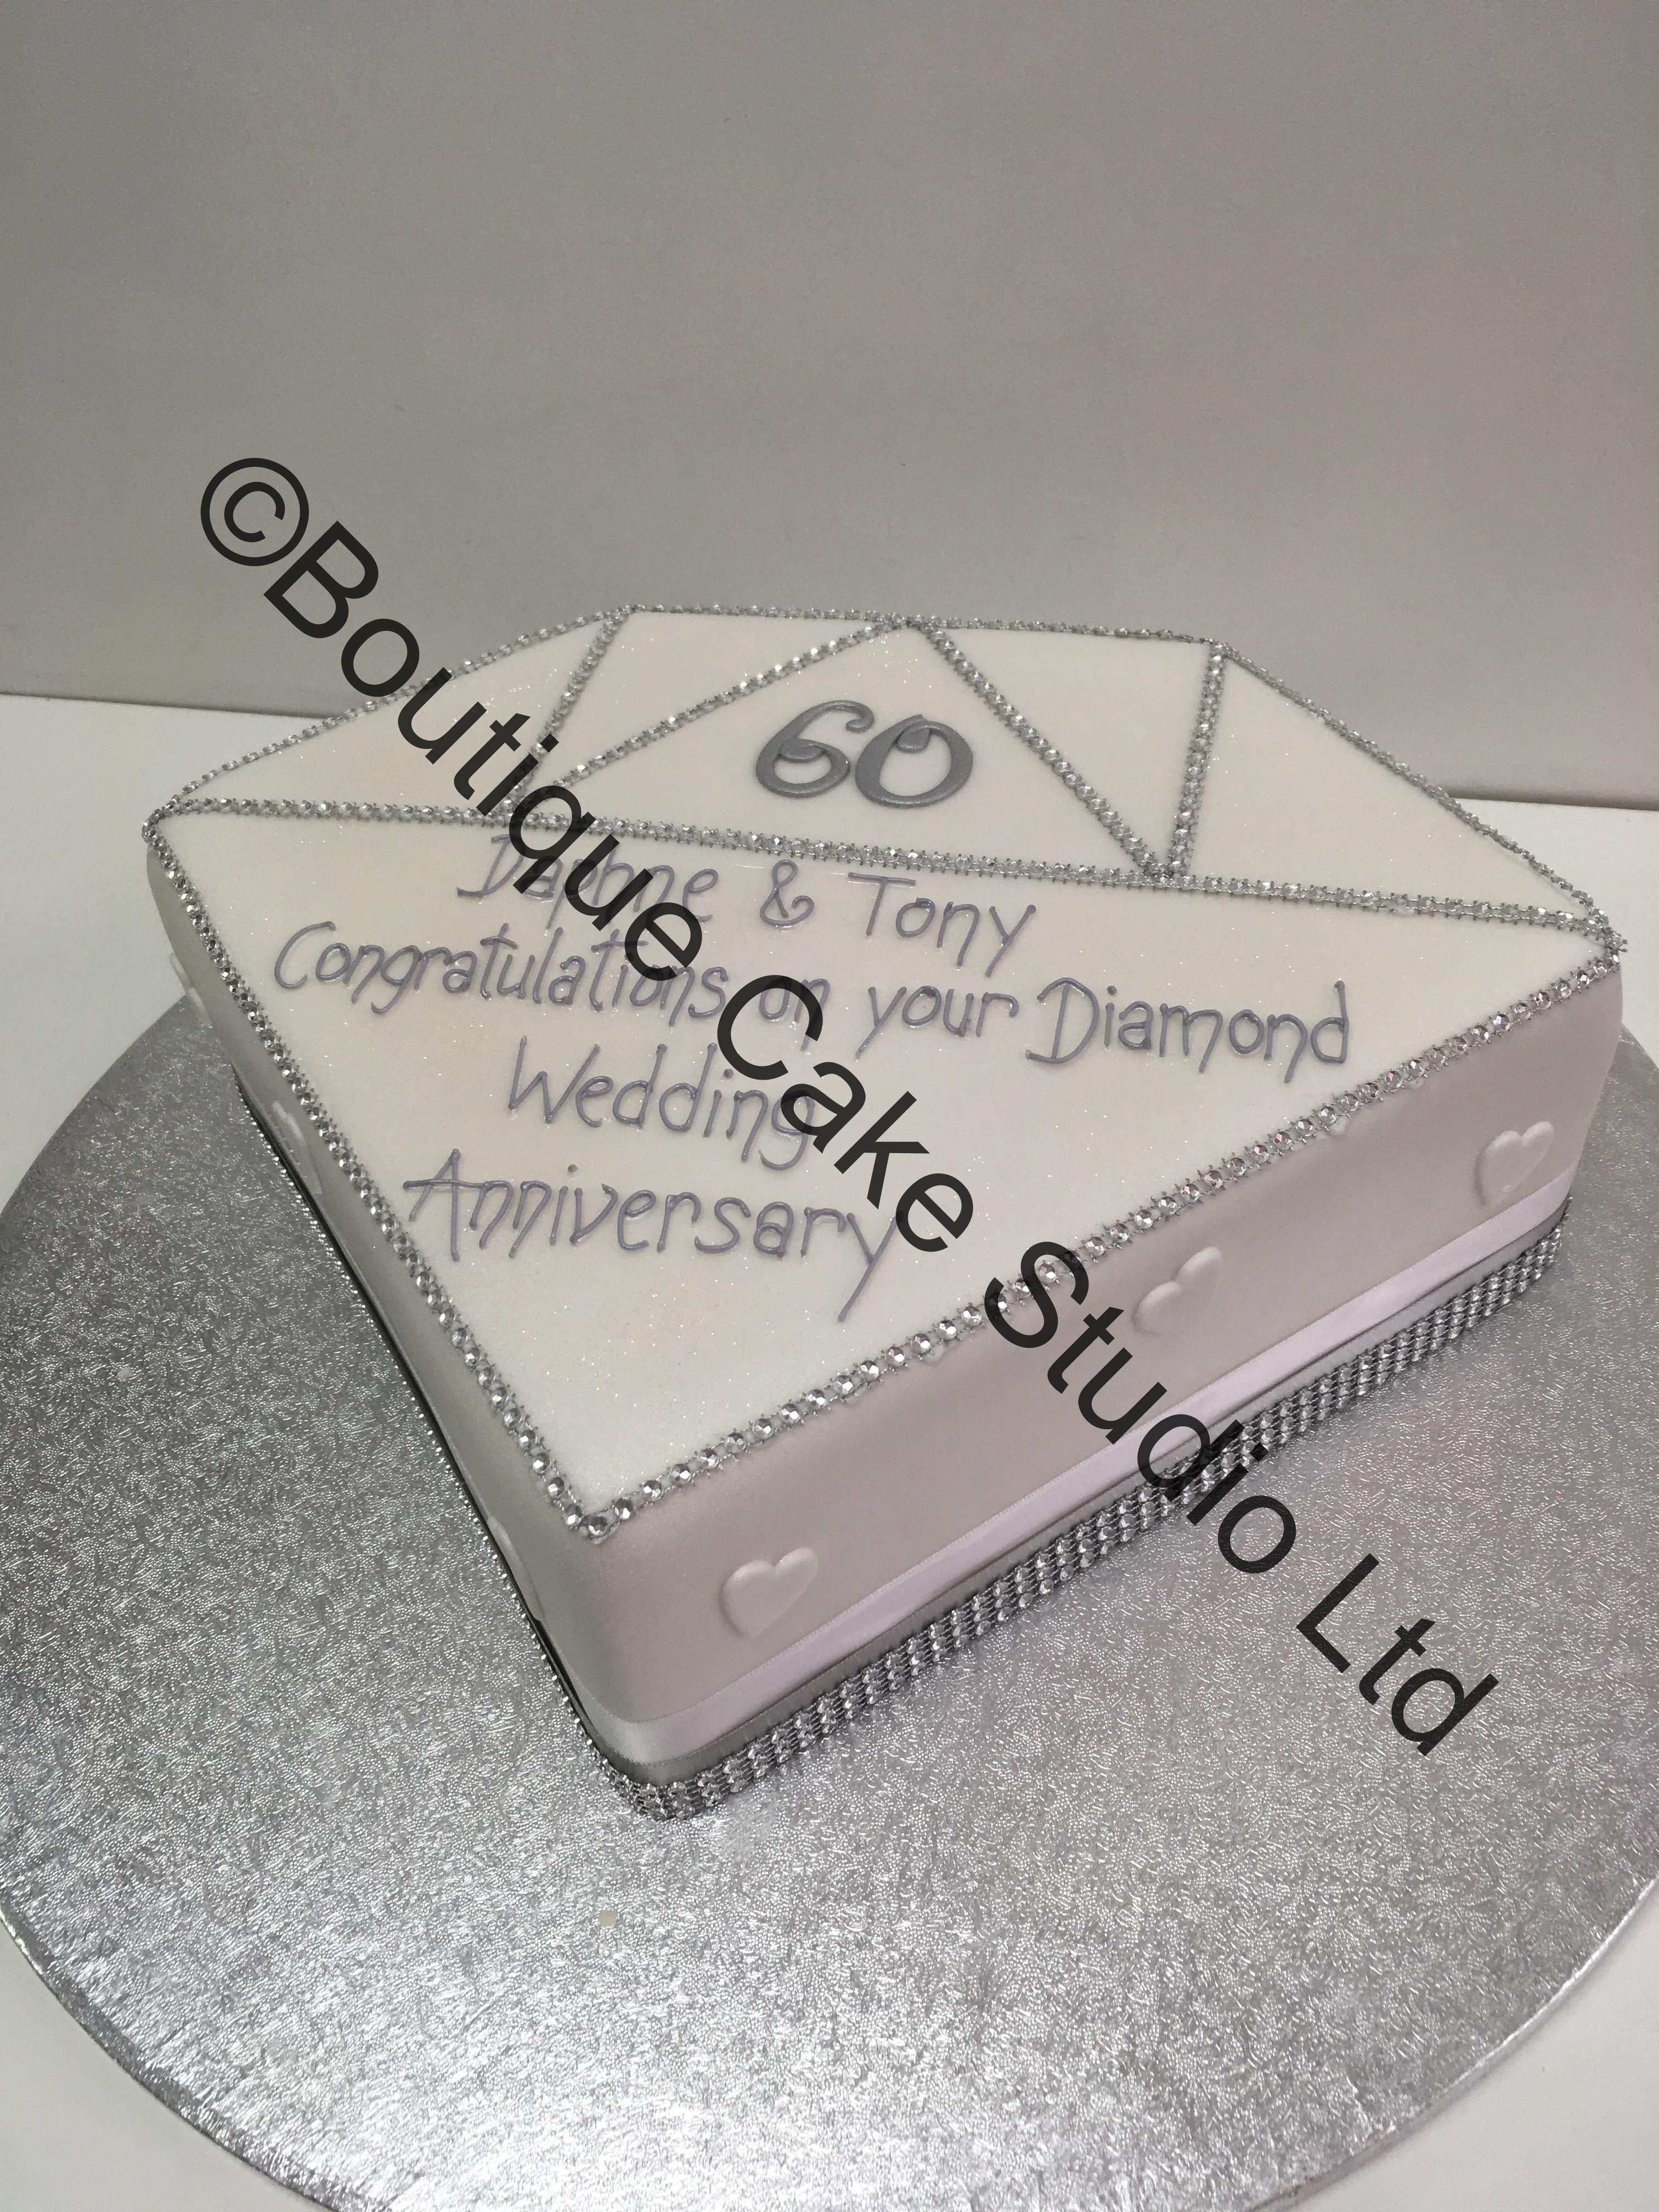 Diamond Shaped Cake with diamantie trim